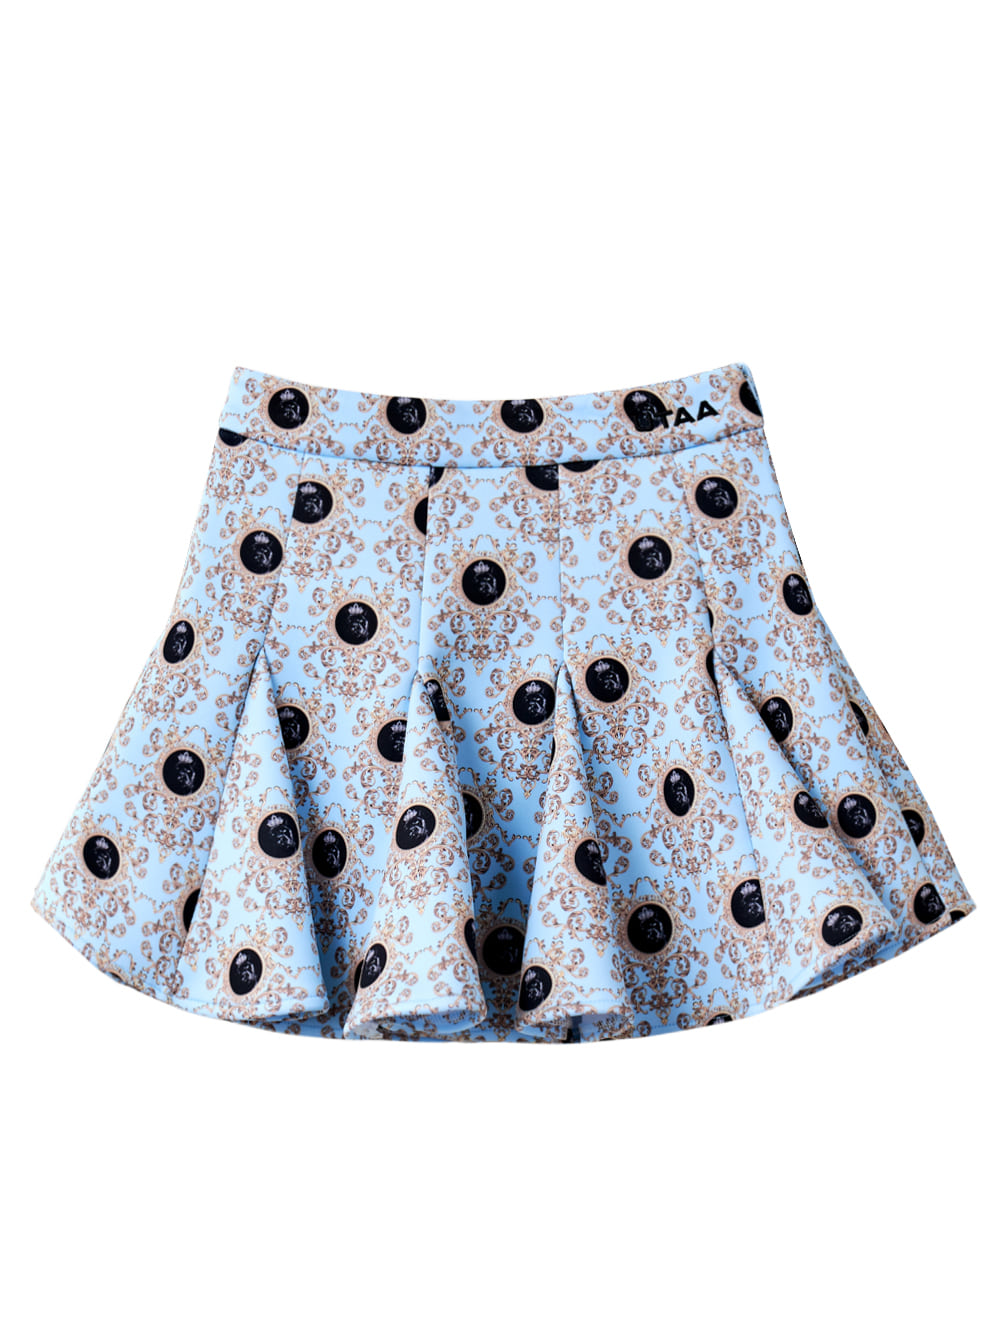 UTAA Dot Panther Neoprene Bloom Skirt : Sky Blue (UB2SKF273SB)